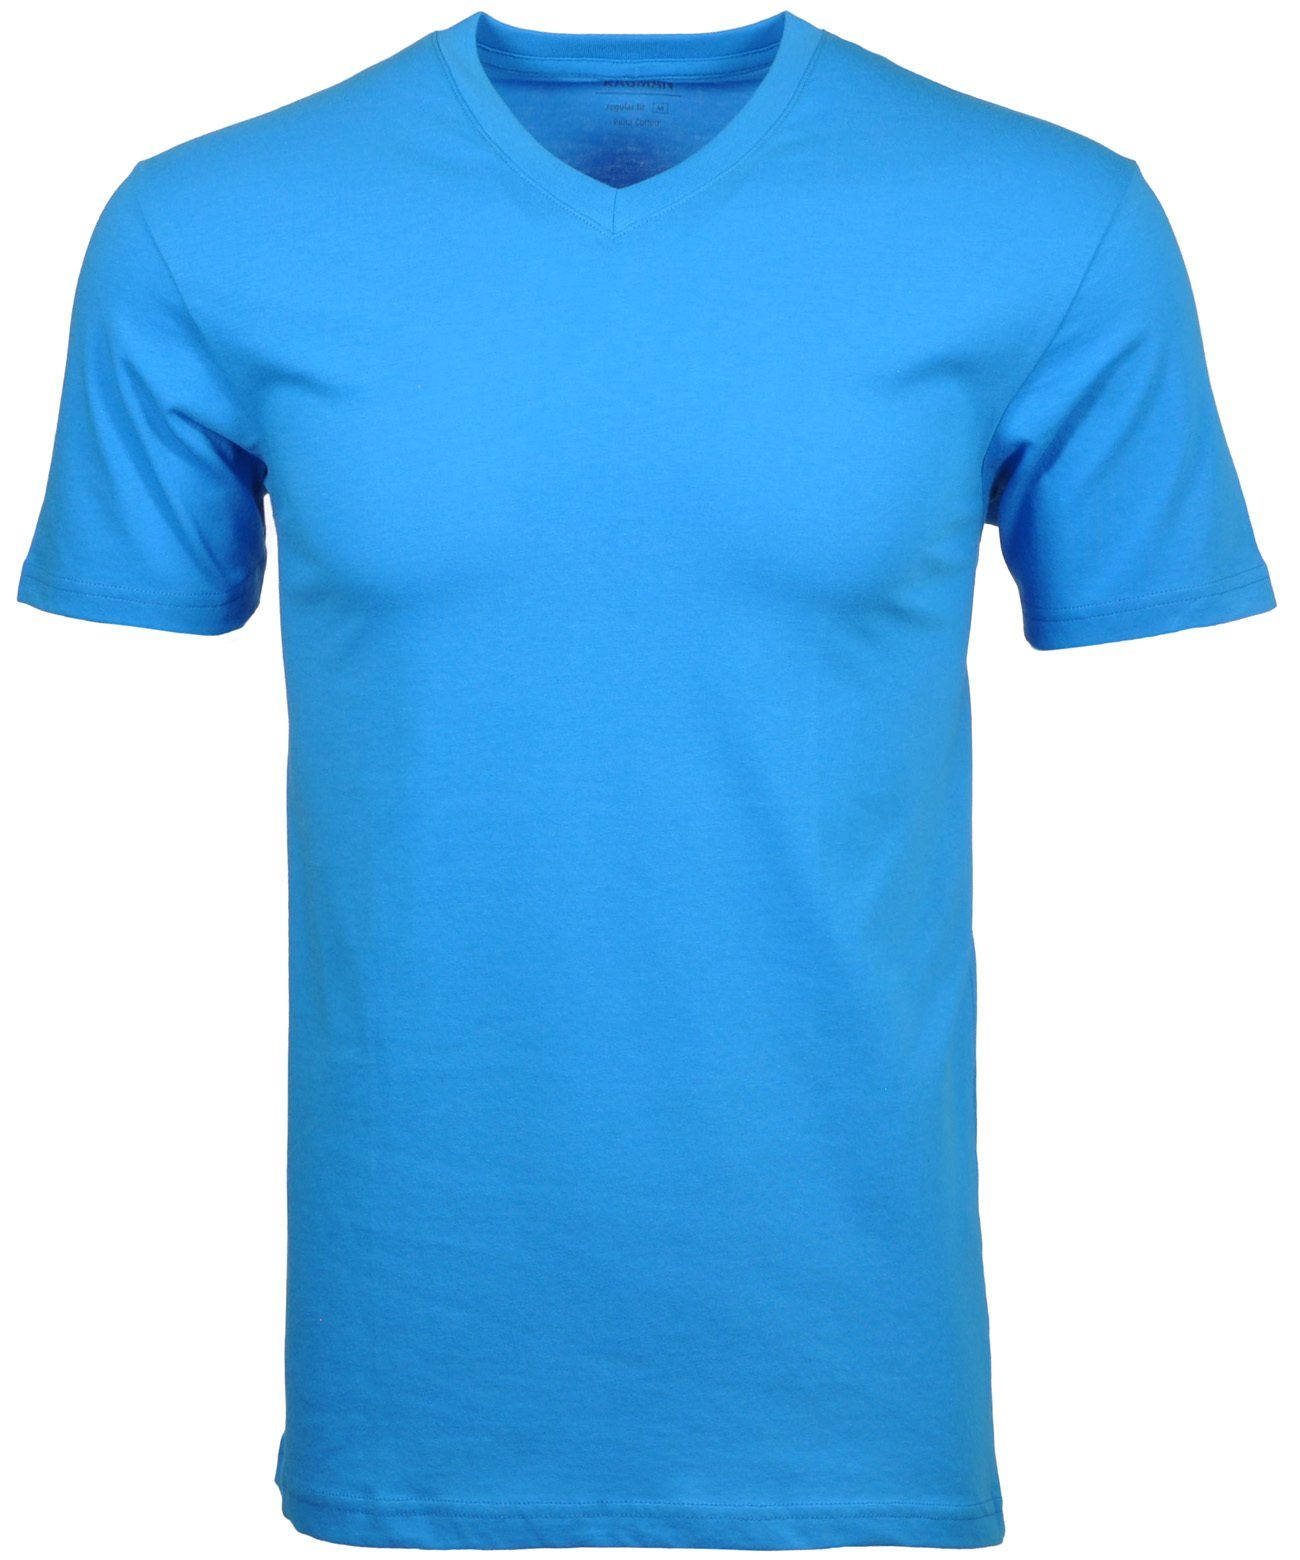 Blaugrau RAGMAN T-Shirt